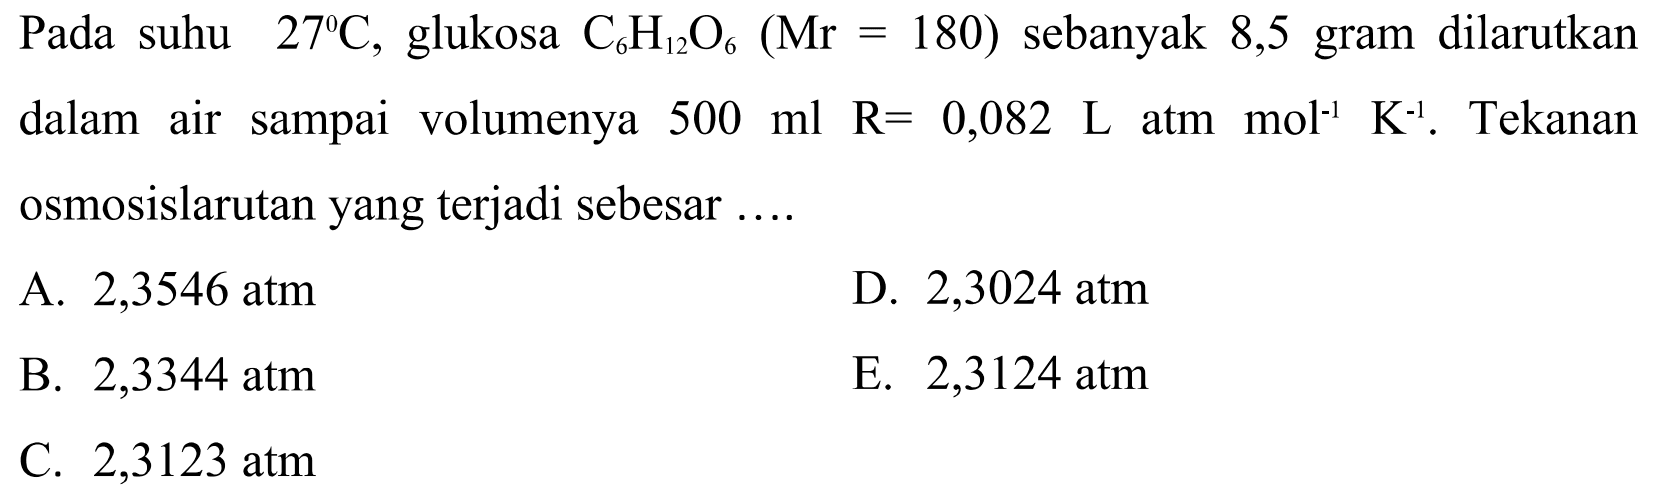 Pada suhu 27 C, glukosa C6H12O6 (Mr=180) sebanyak 8,5 gram dilarutkan dalam air sampai volumenya 500 ml R=0,082 L atm mol^-1 K^-1. Tekanan osmosis larutan yang terjadi sebesar ....